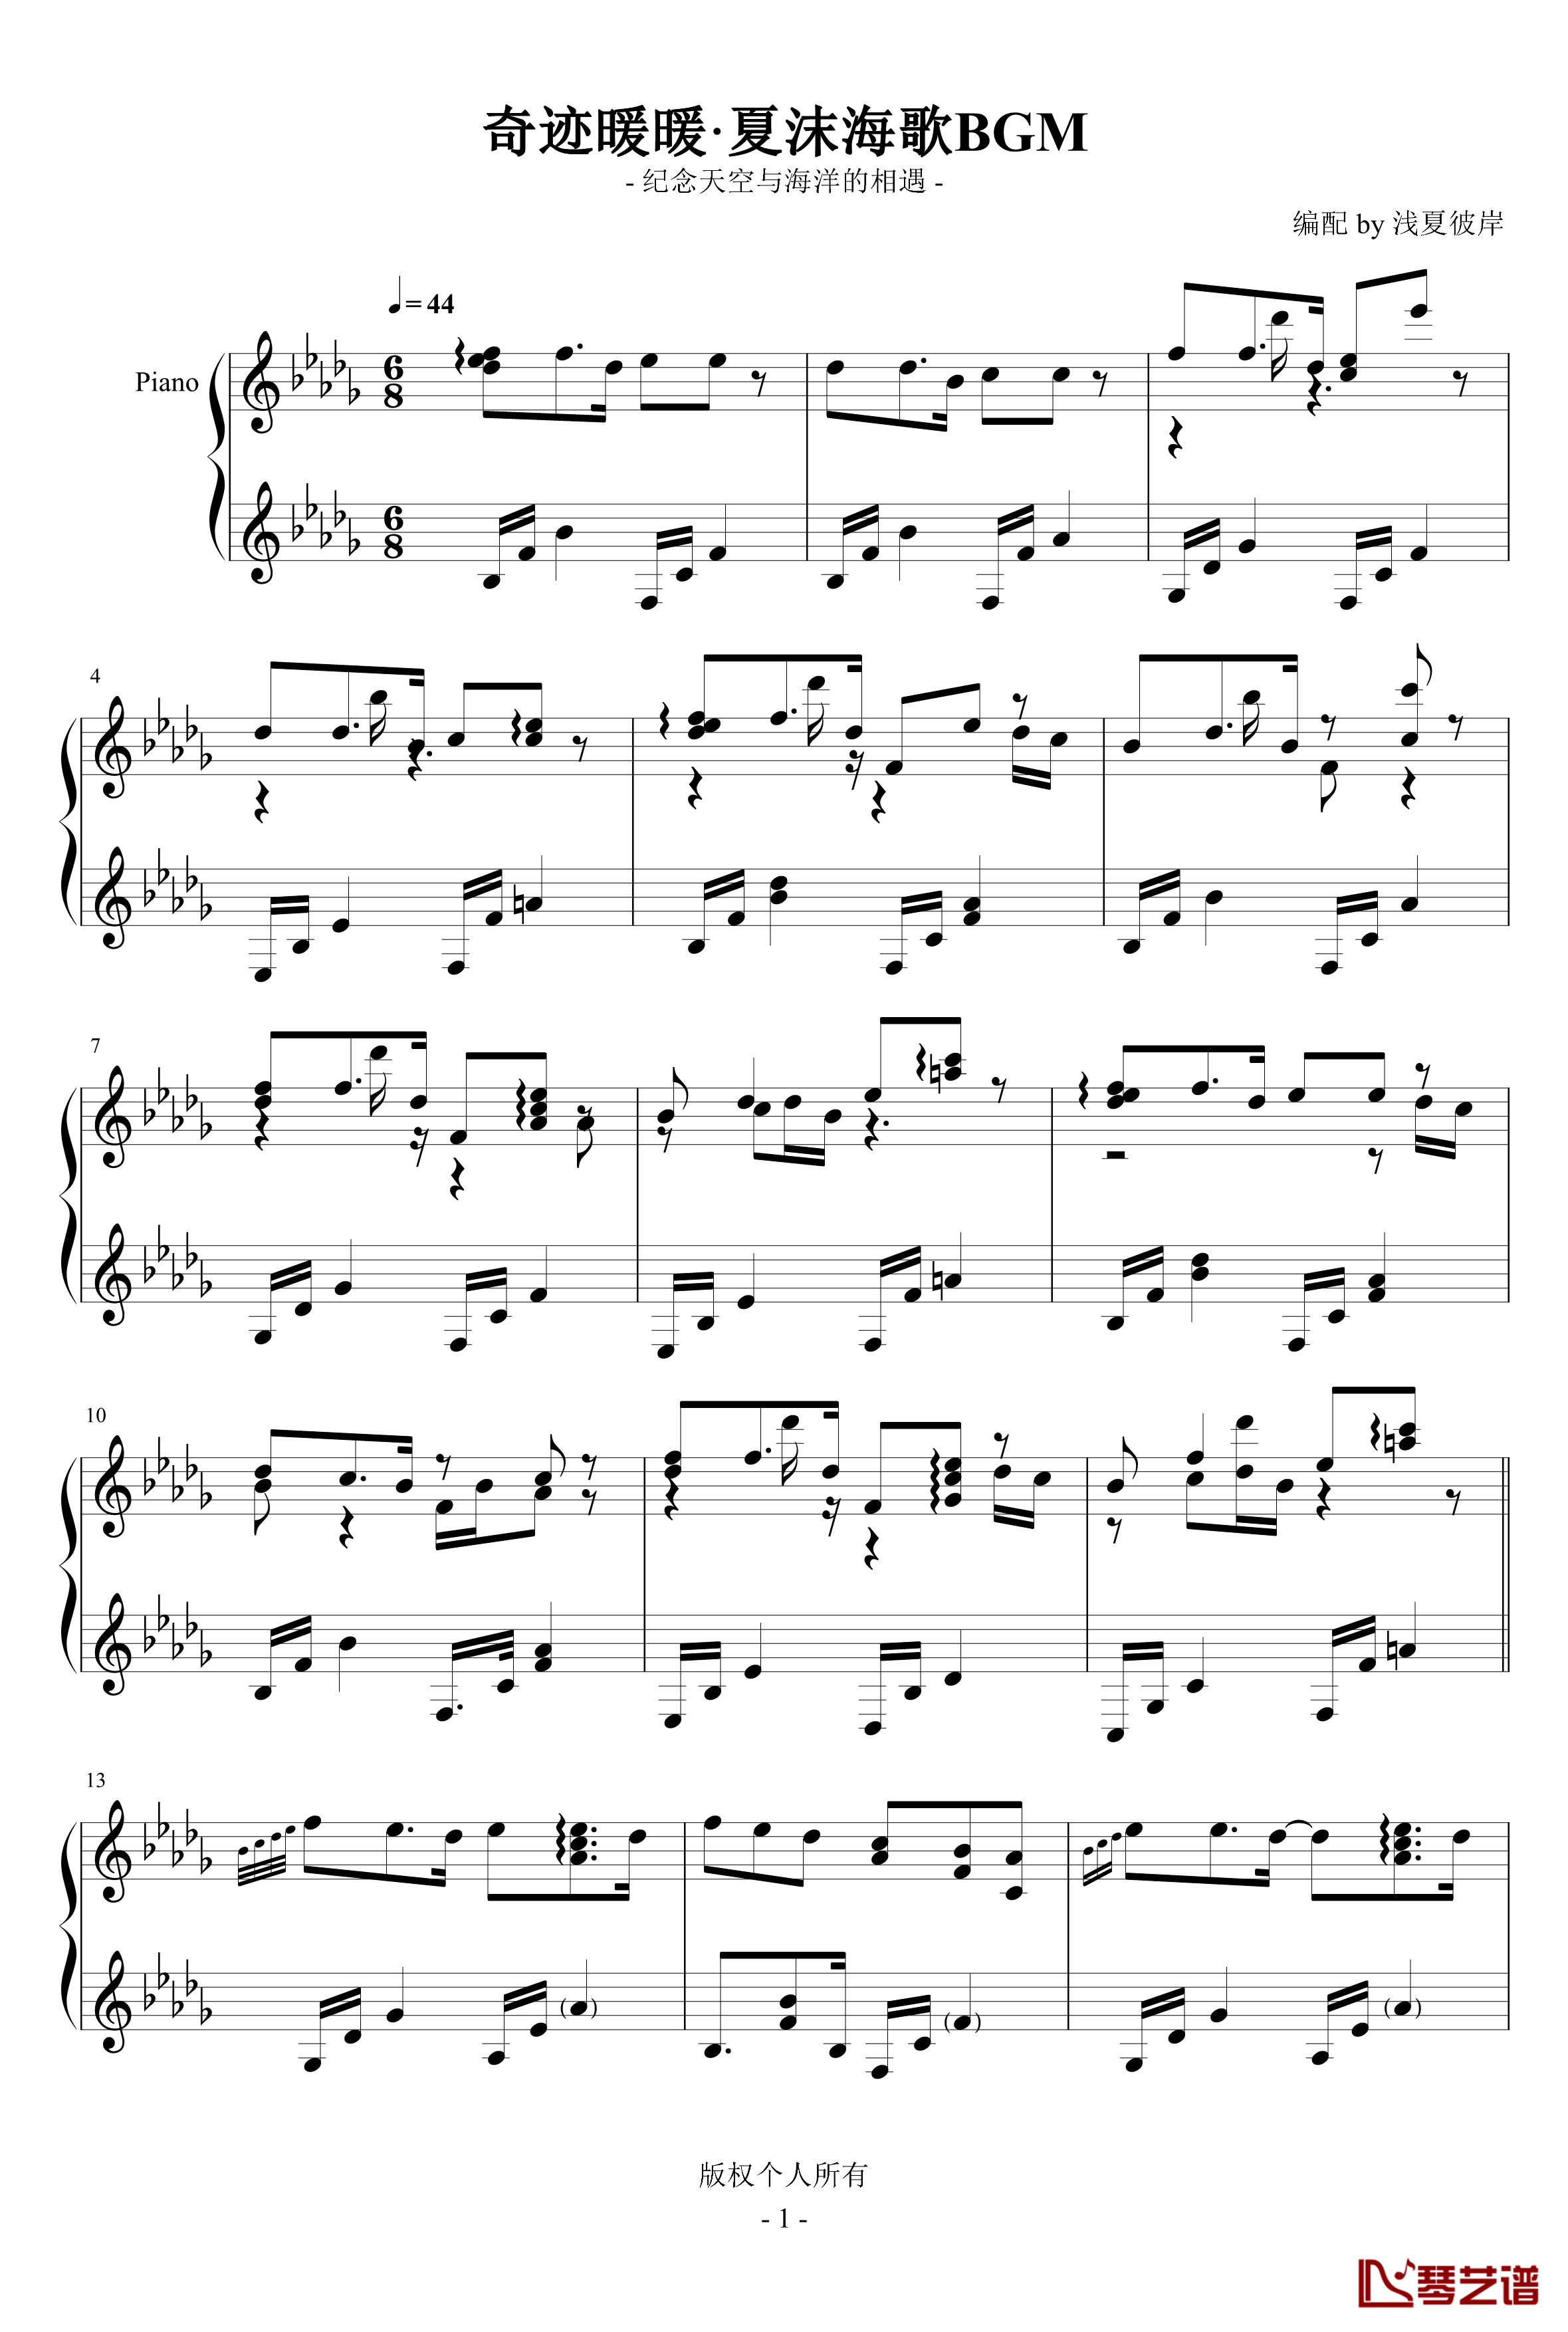 夏沫海歌BGM钢琴谱-奇迹暖暖1